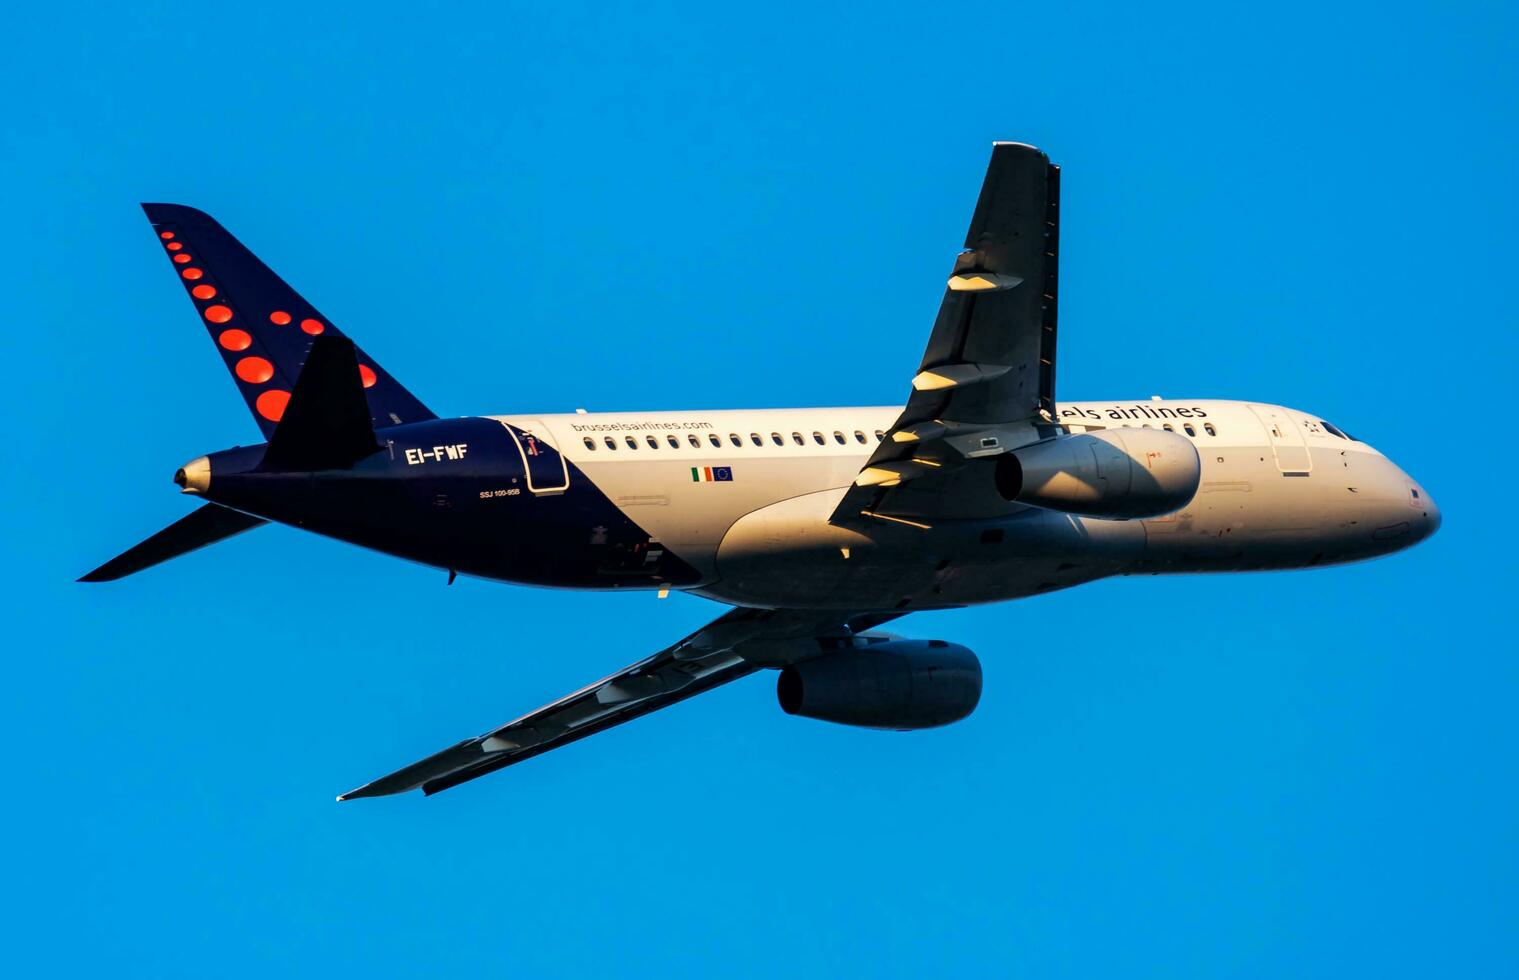 Bruxelas companhias aéreas sukhoi ssj-100 superjato ei-fwf passageiro avião saída e levar fora às Viena aeroporto foto